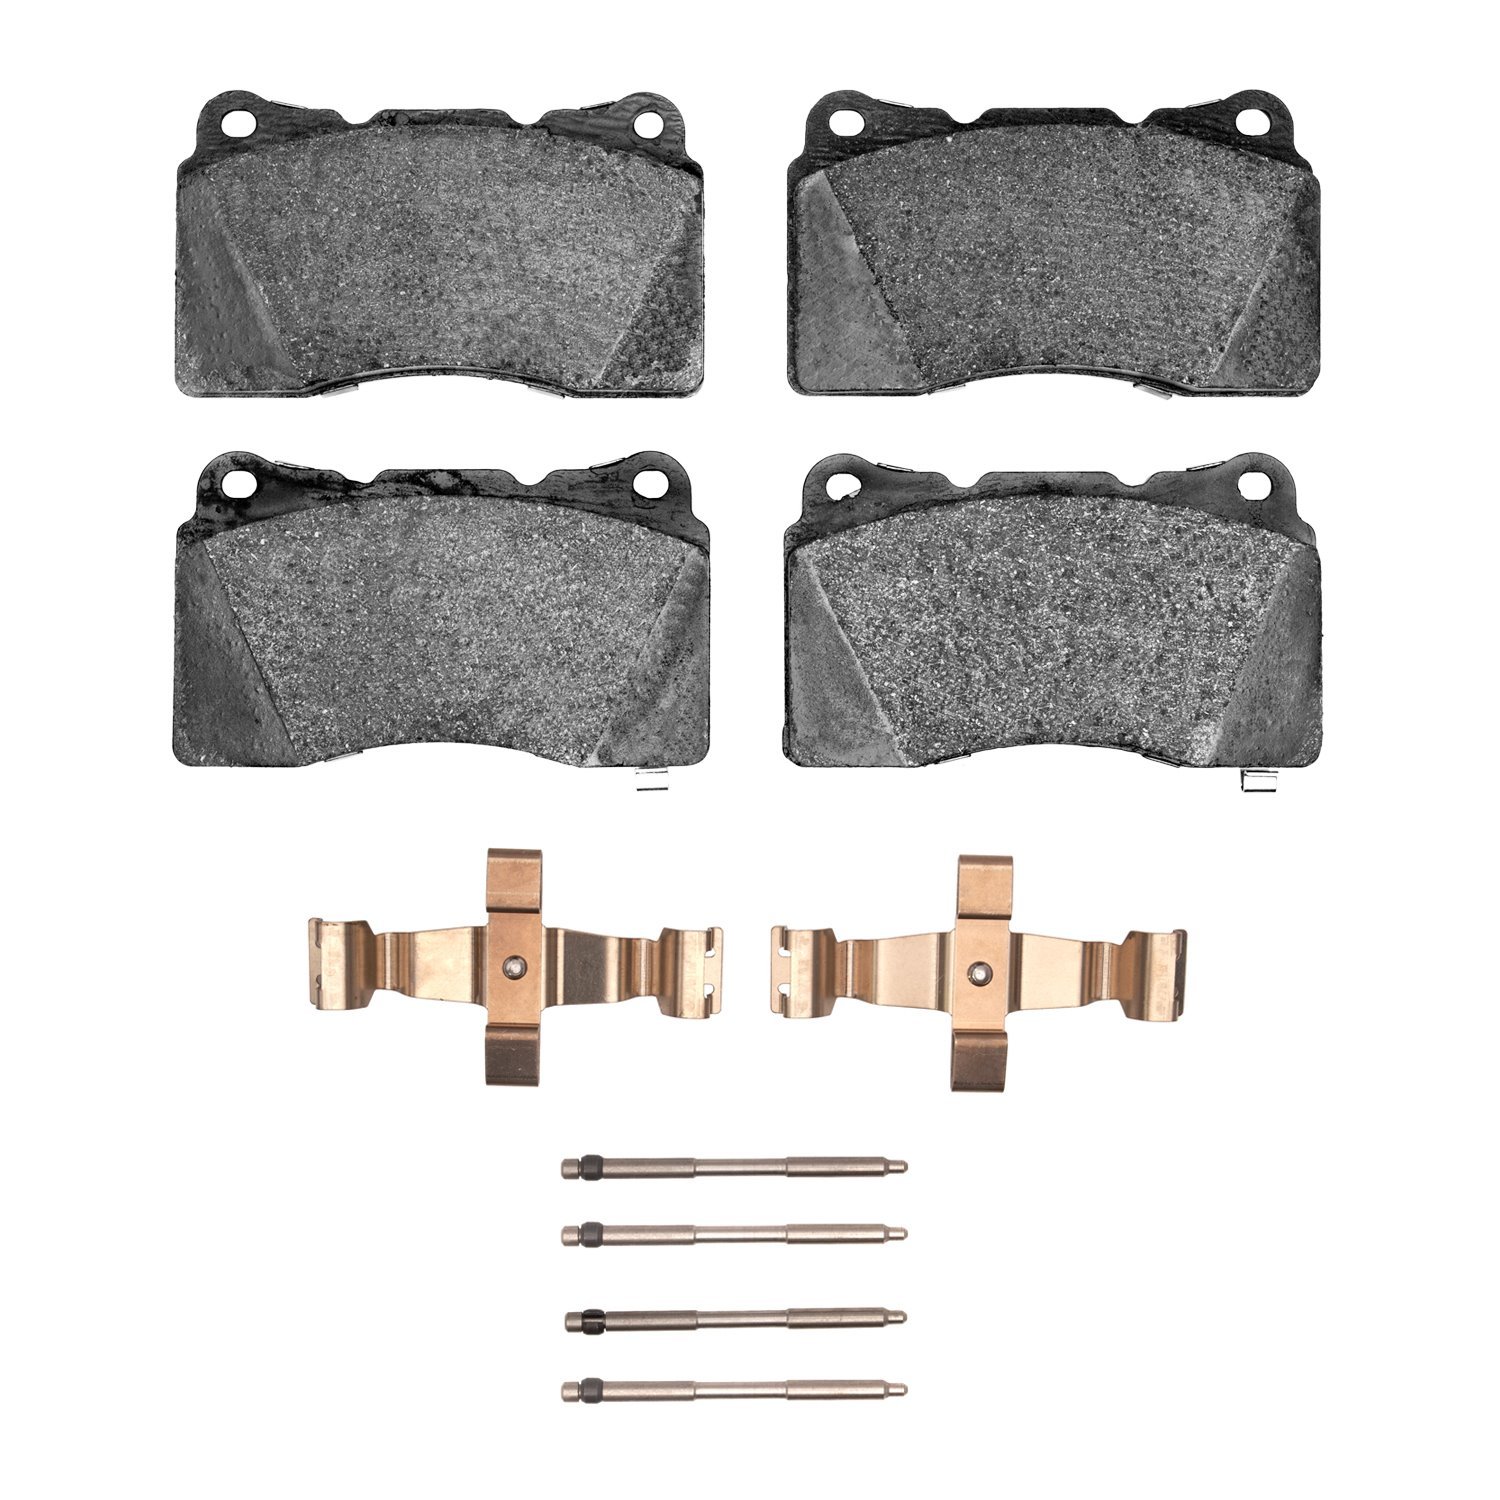 1552-1001-03 5000 Advanced Low-Metallic Brake Pads & Hardware Kit, 2014-2017 GM, Position: Front